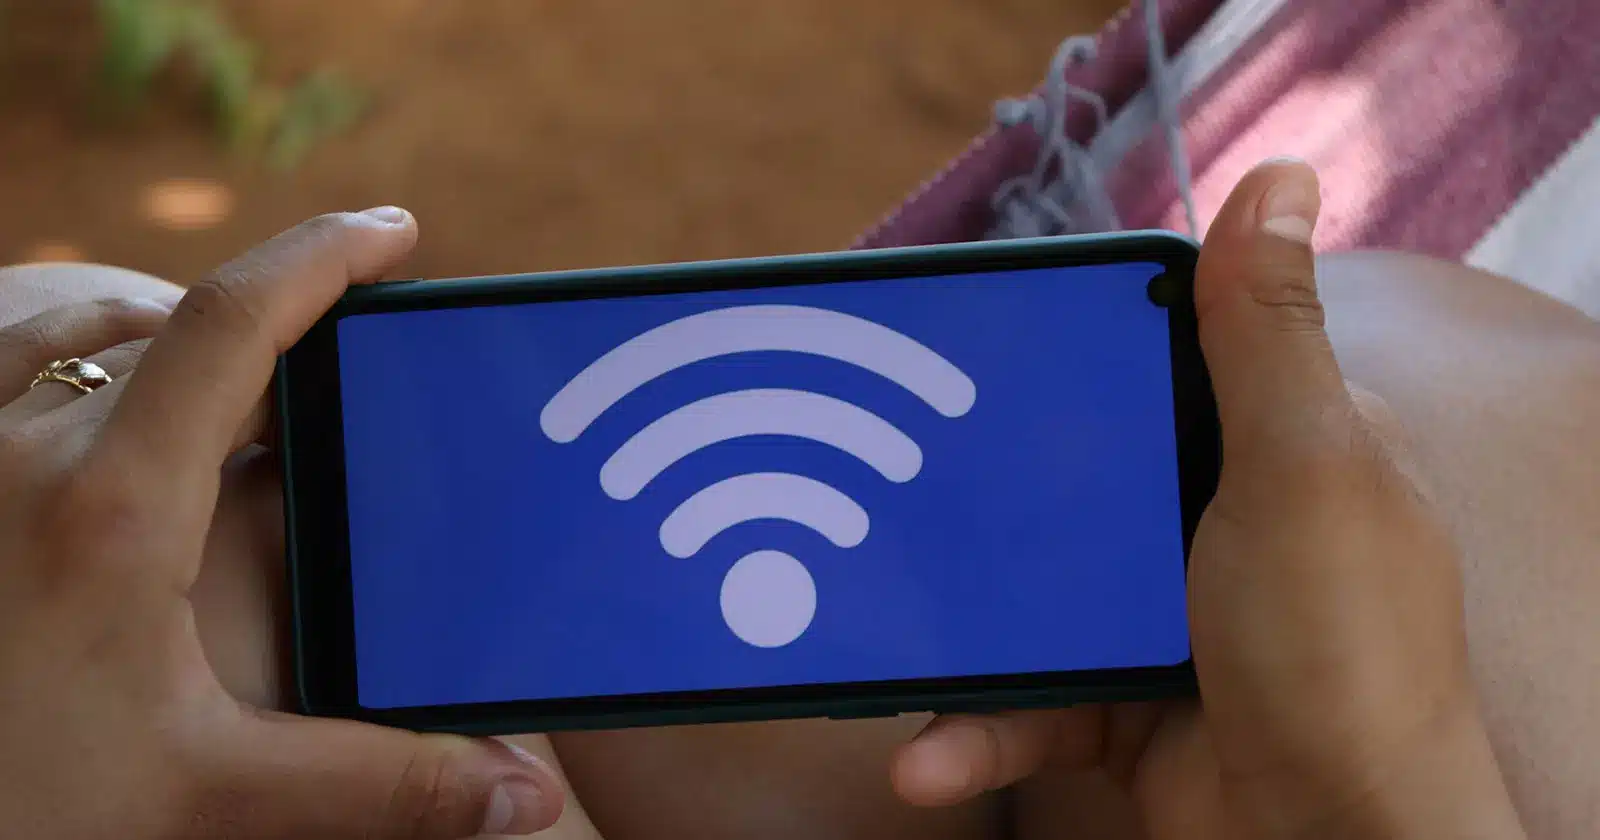 Seu Wi-Fi tá fraco? Calma! Esse truque vai deixar seu celular com internet potente em minutos